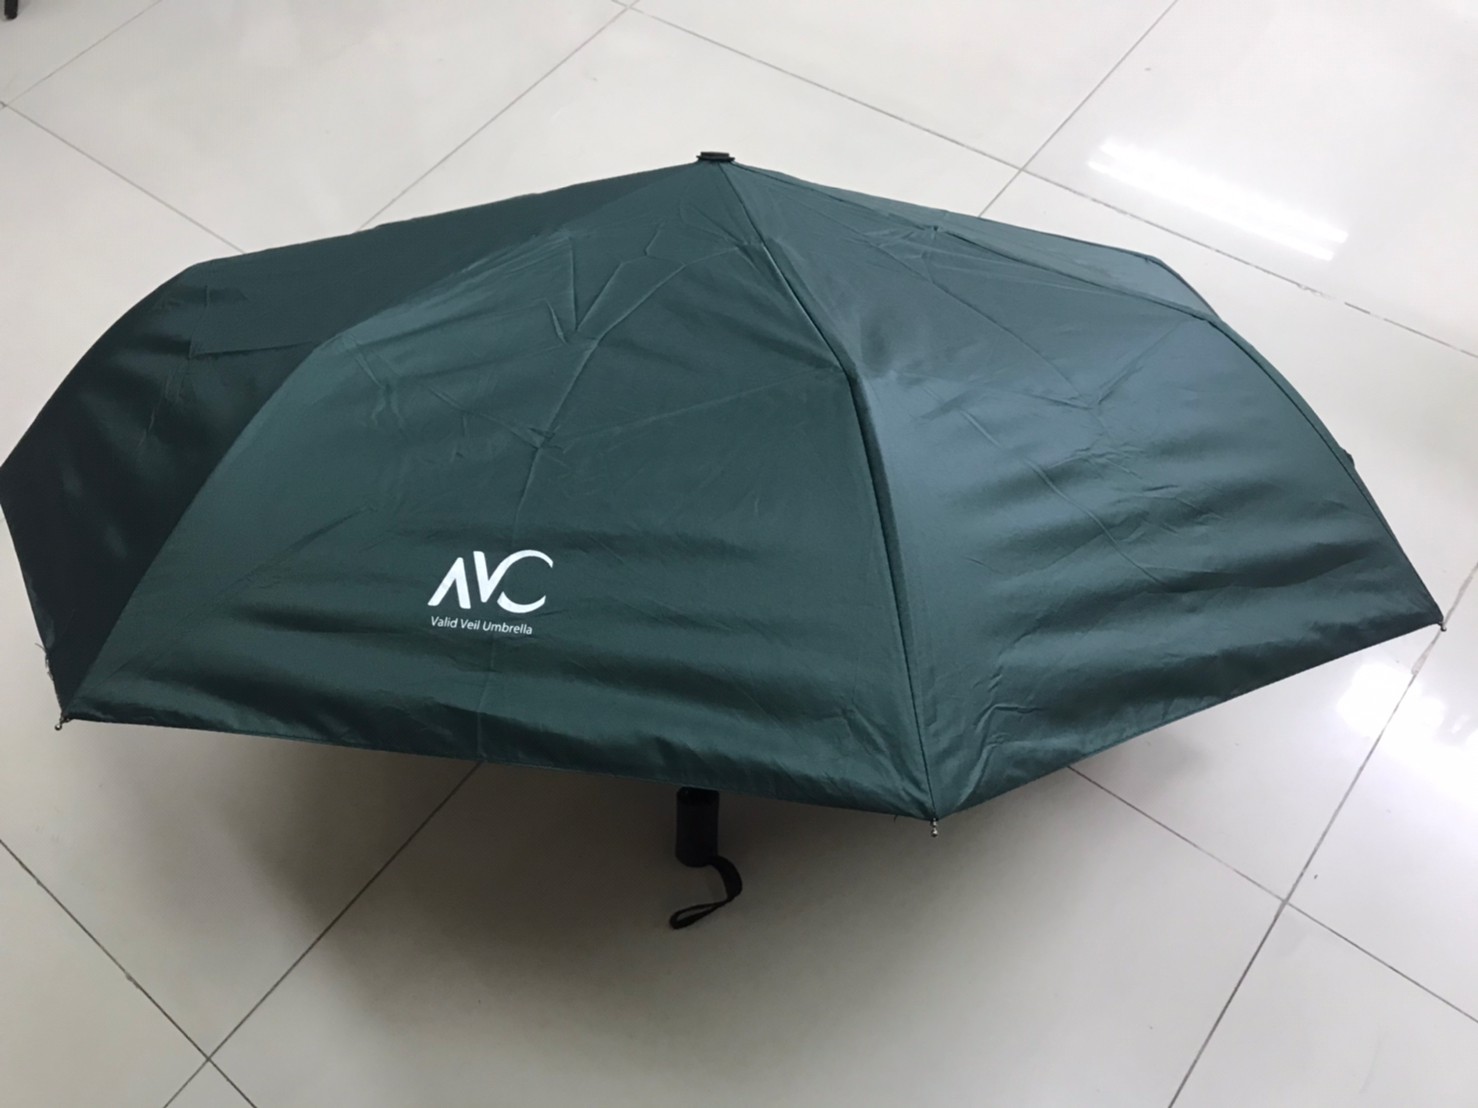 Umbrella ร่มพับ 3 ตอน กัน UV กันฝน☔️น้ำหนักเบา พกพาได้สะดวกมีความสวยงามสามารถใช้ได้ทุกฤดู ผลิตจากวัสดุคุณภาพดีขนาดของร่มยาว 26*96*65 CM. -VAC-